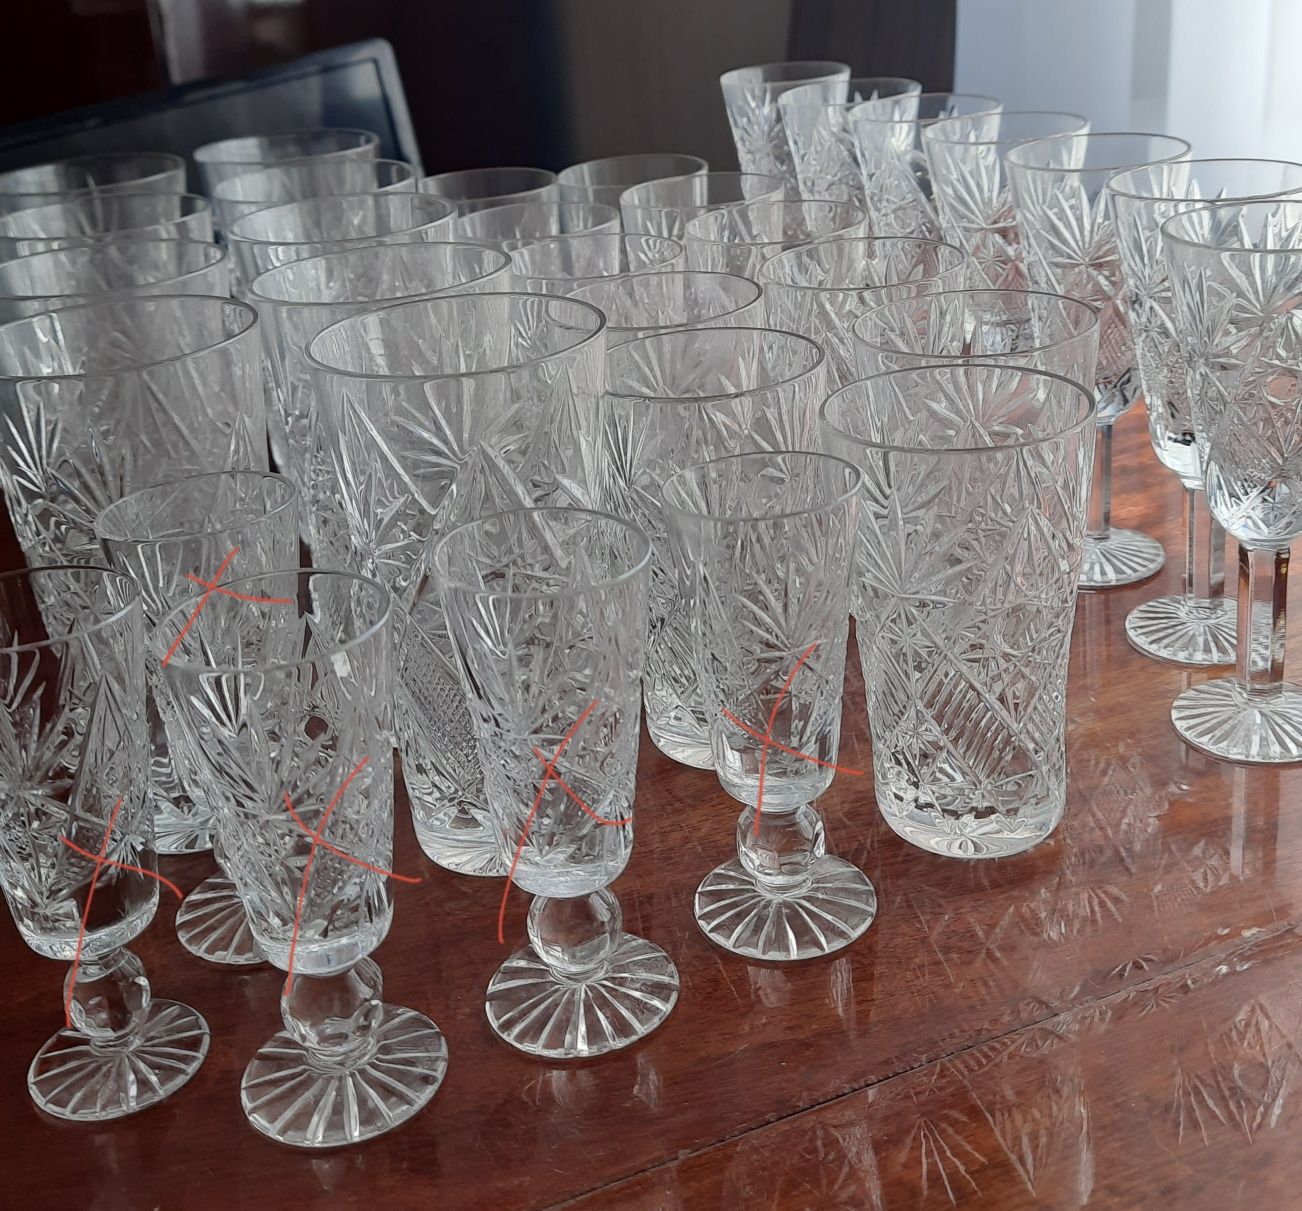 Хрустальные вазы,стаканы рюмки